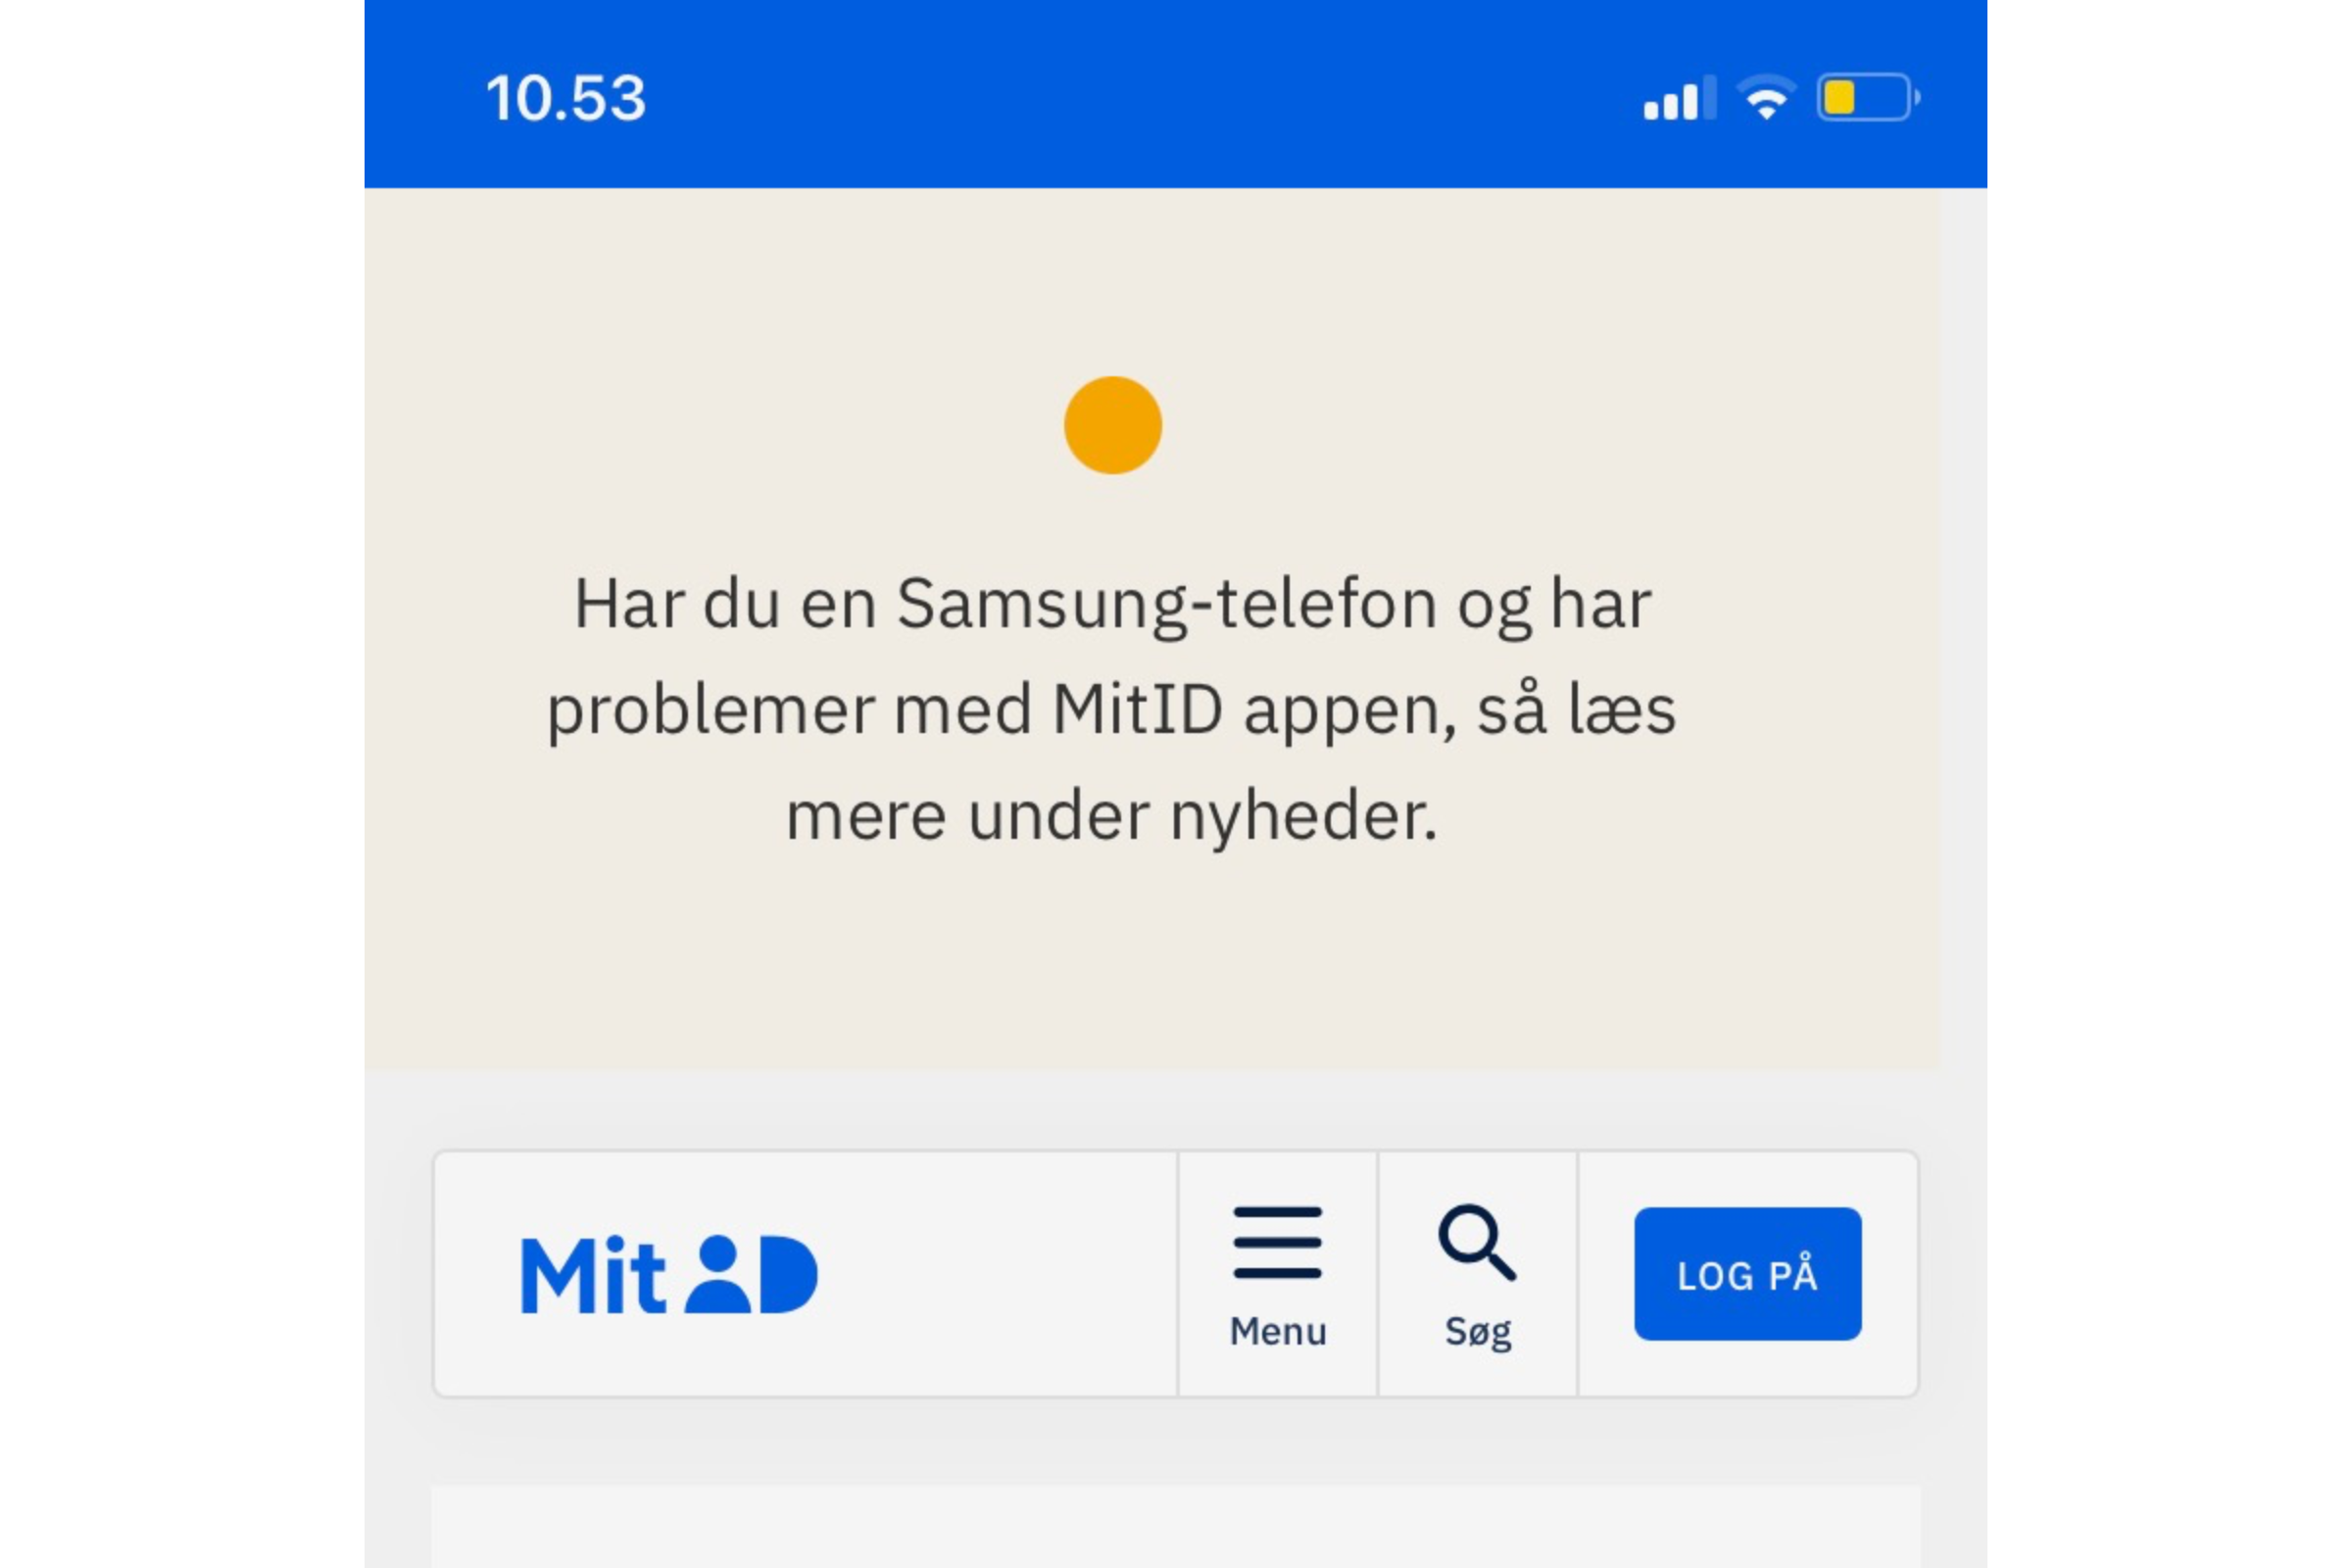 MitID og Samsung problemer